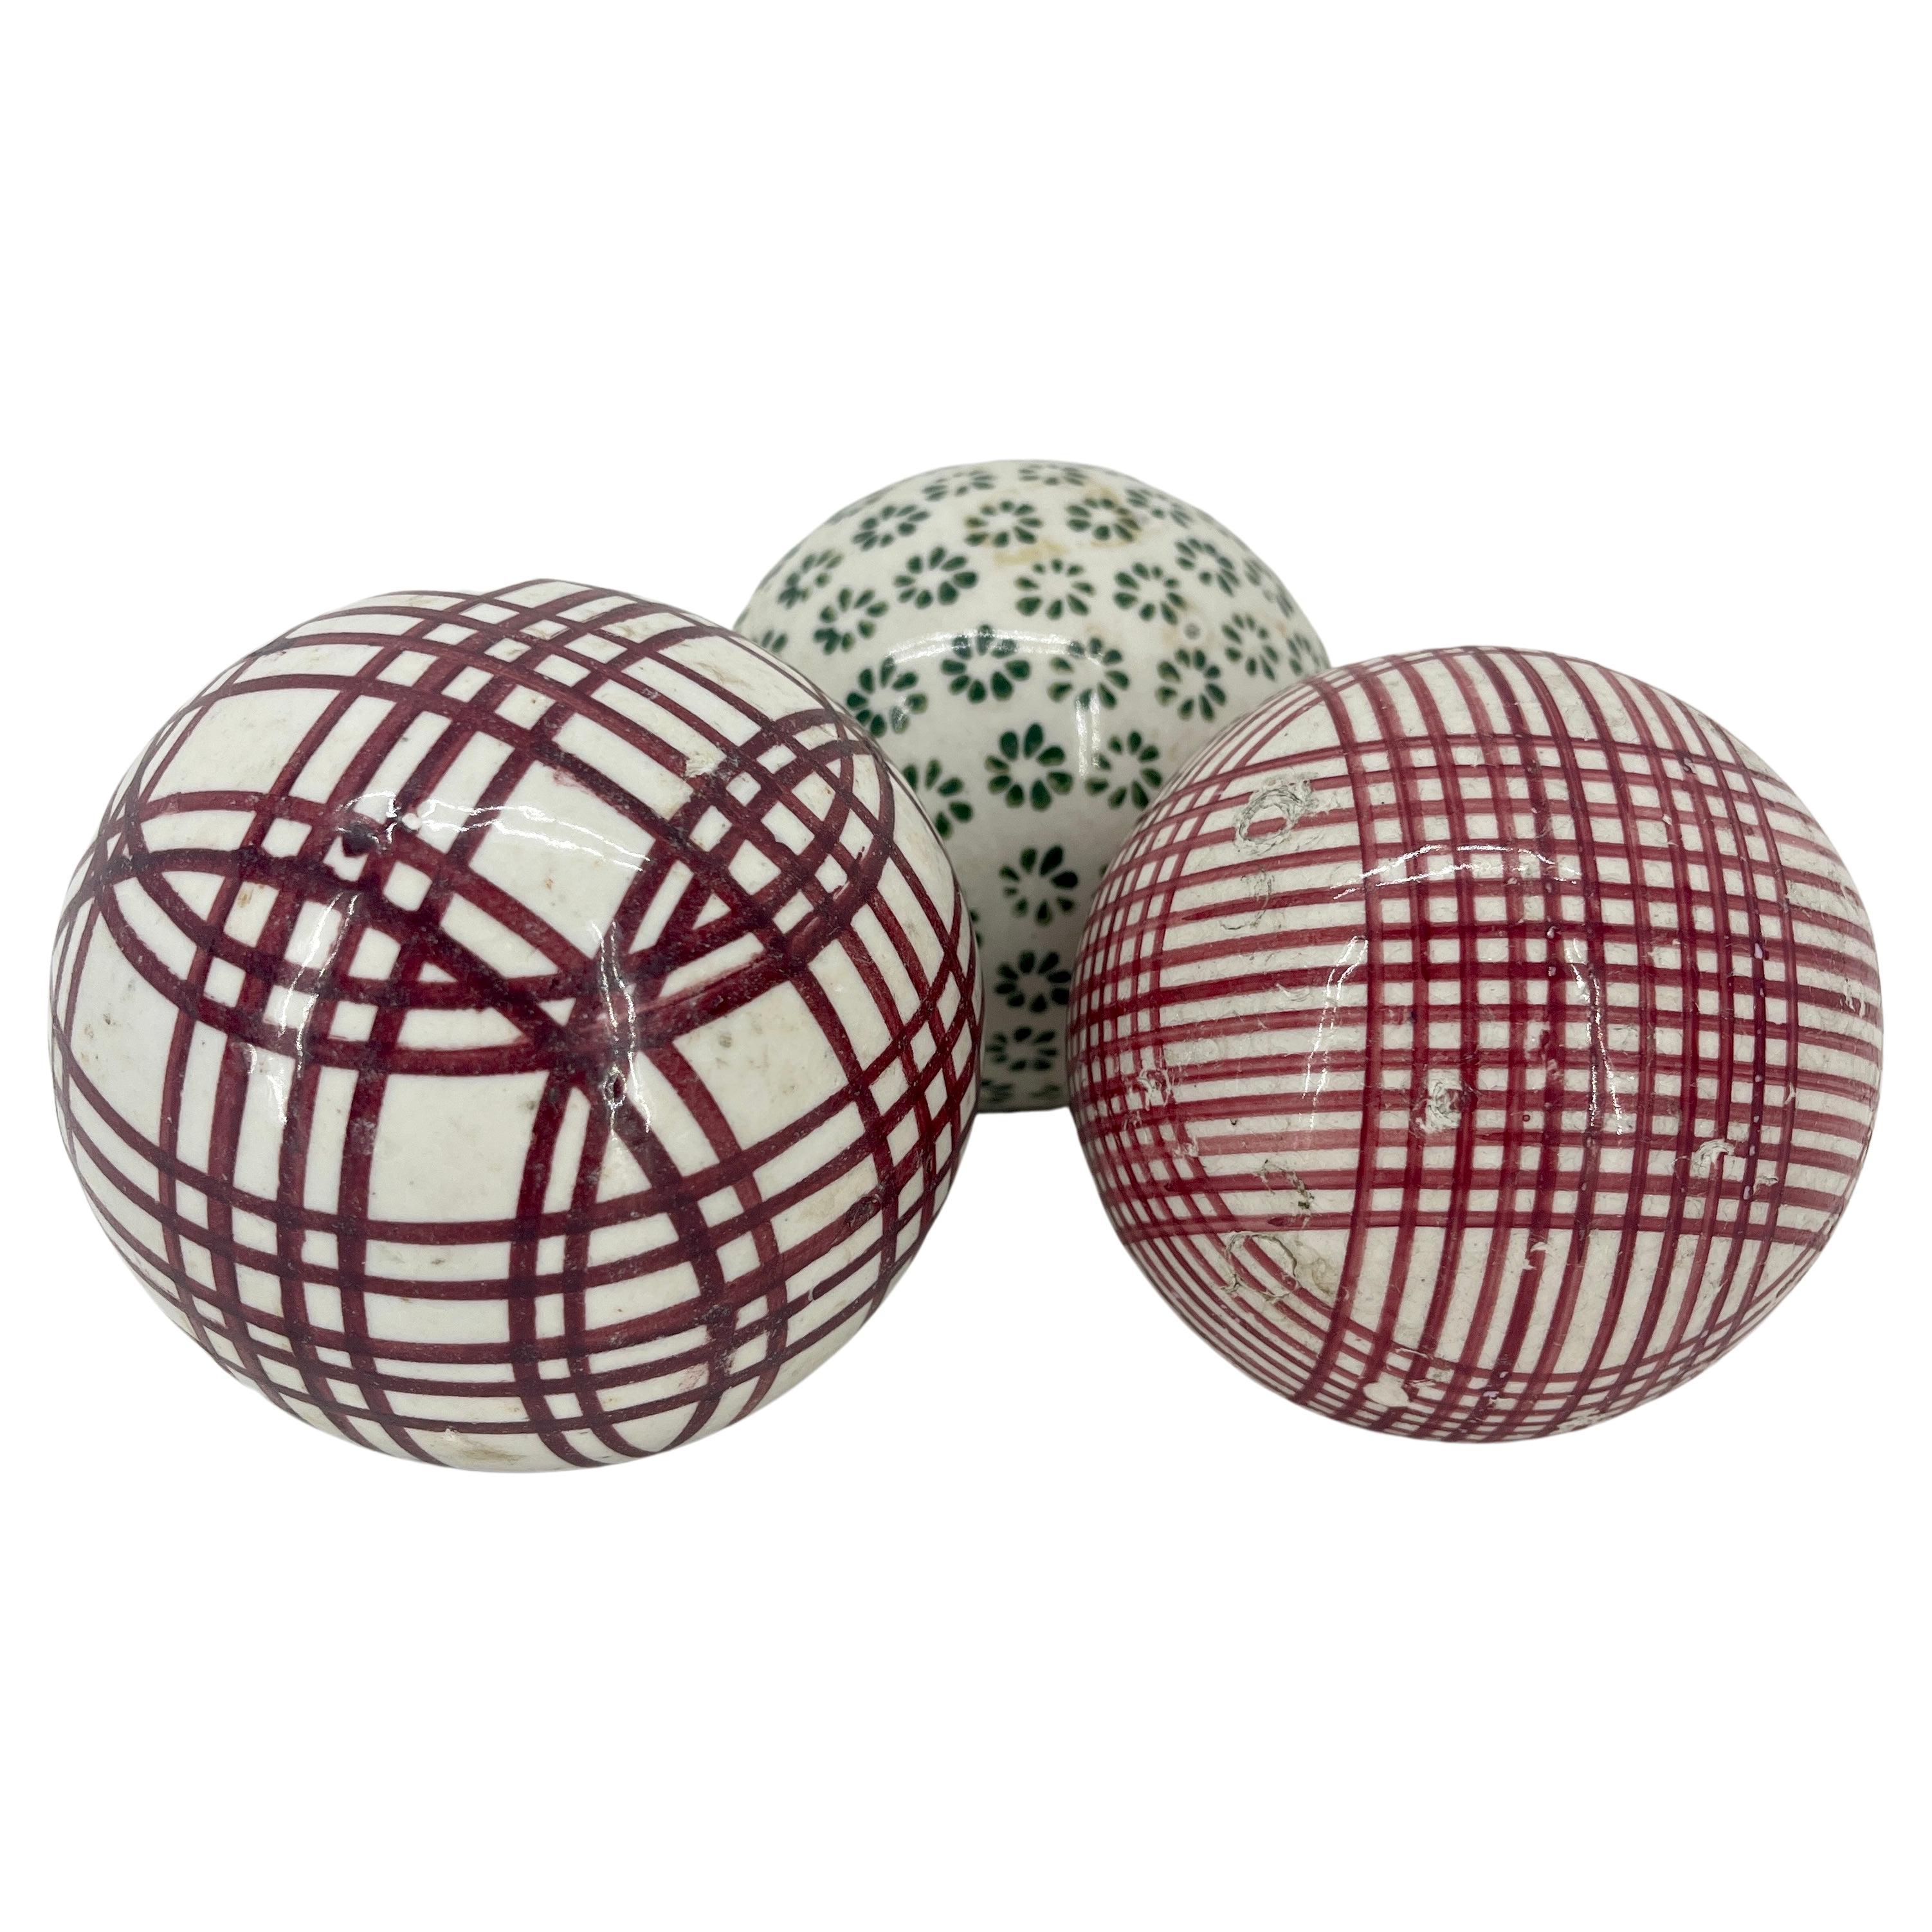 Ensemble de trois boules de tapis en grès écossais 

Boules de moquette en rouge et vert. Jeu historique datant de plusieurs siècles, la balle au tapis est similaire à la balle Bocci. Un jeu d'intérieur, un jeu de quilles est installé dans un